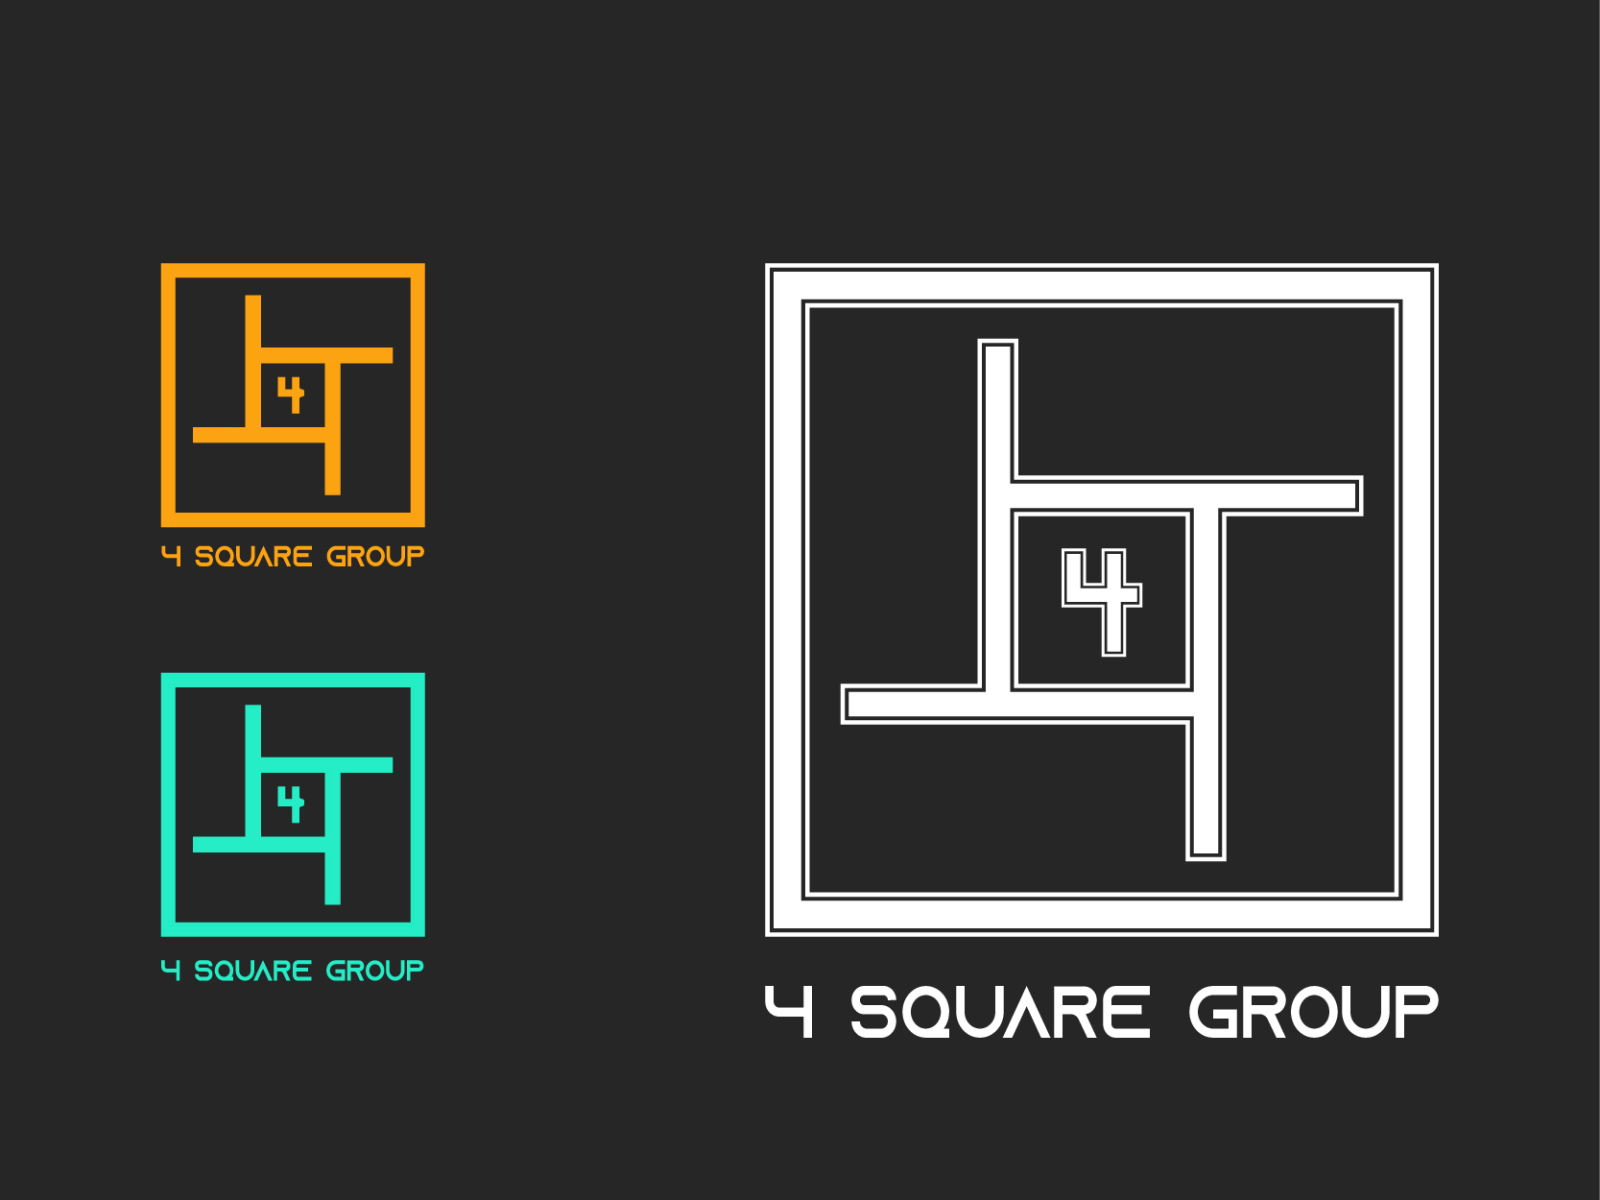 Four squares logo Modelo